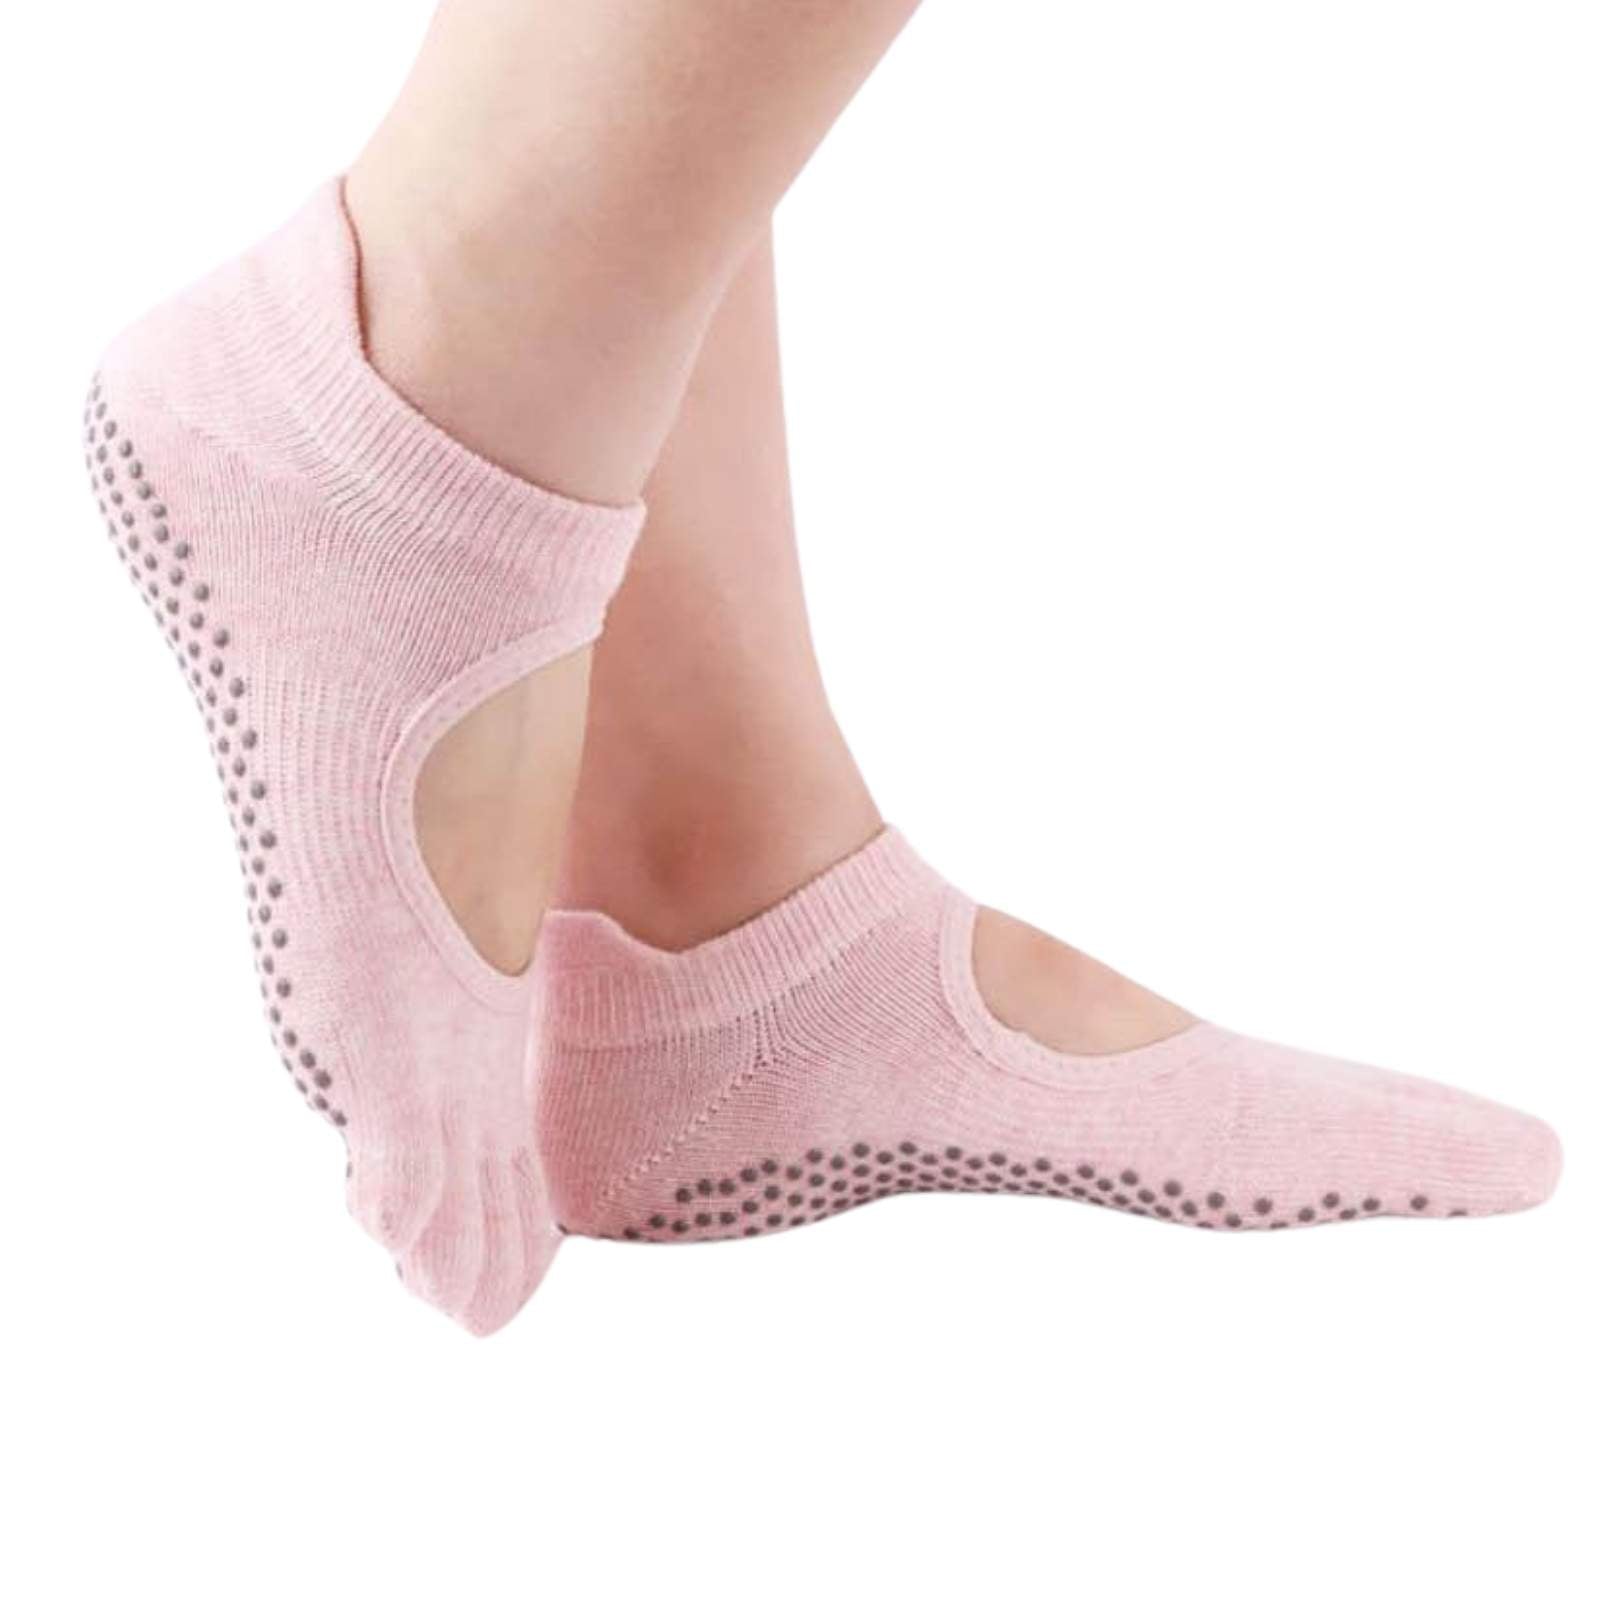 2 Pairs Non Slip Yoga Socks With Grips,non-slip Five Toe Socks For Pilates,  Barre, Ballet, Fitness